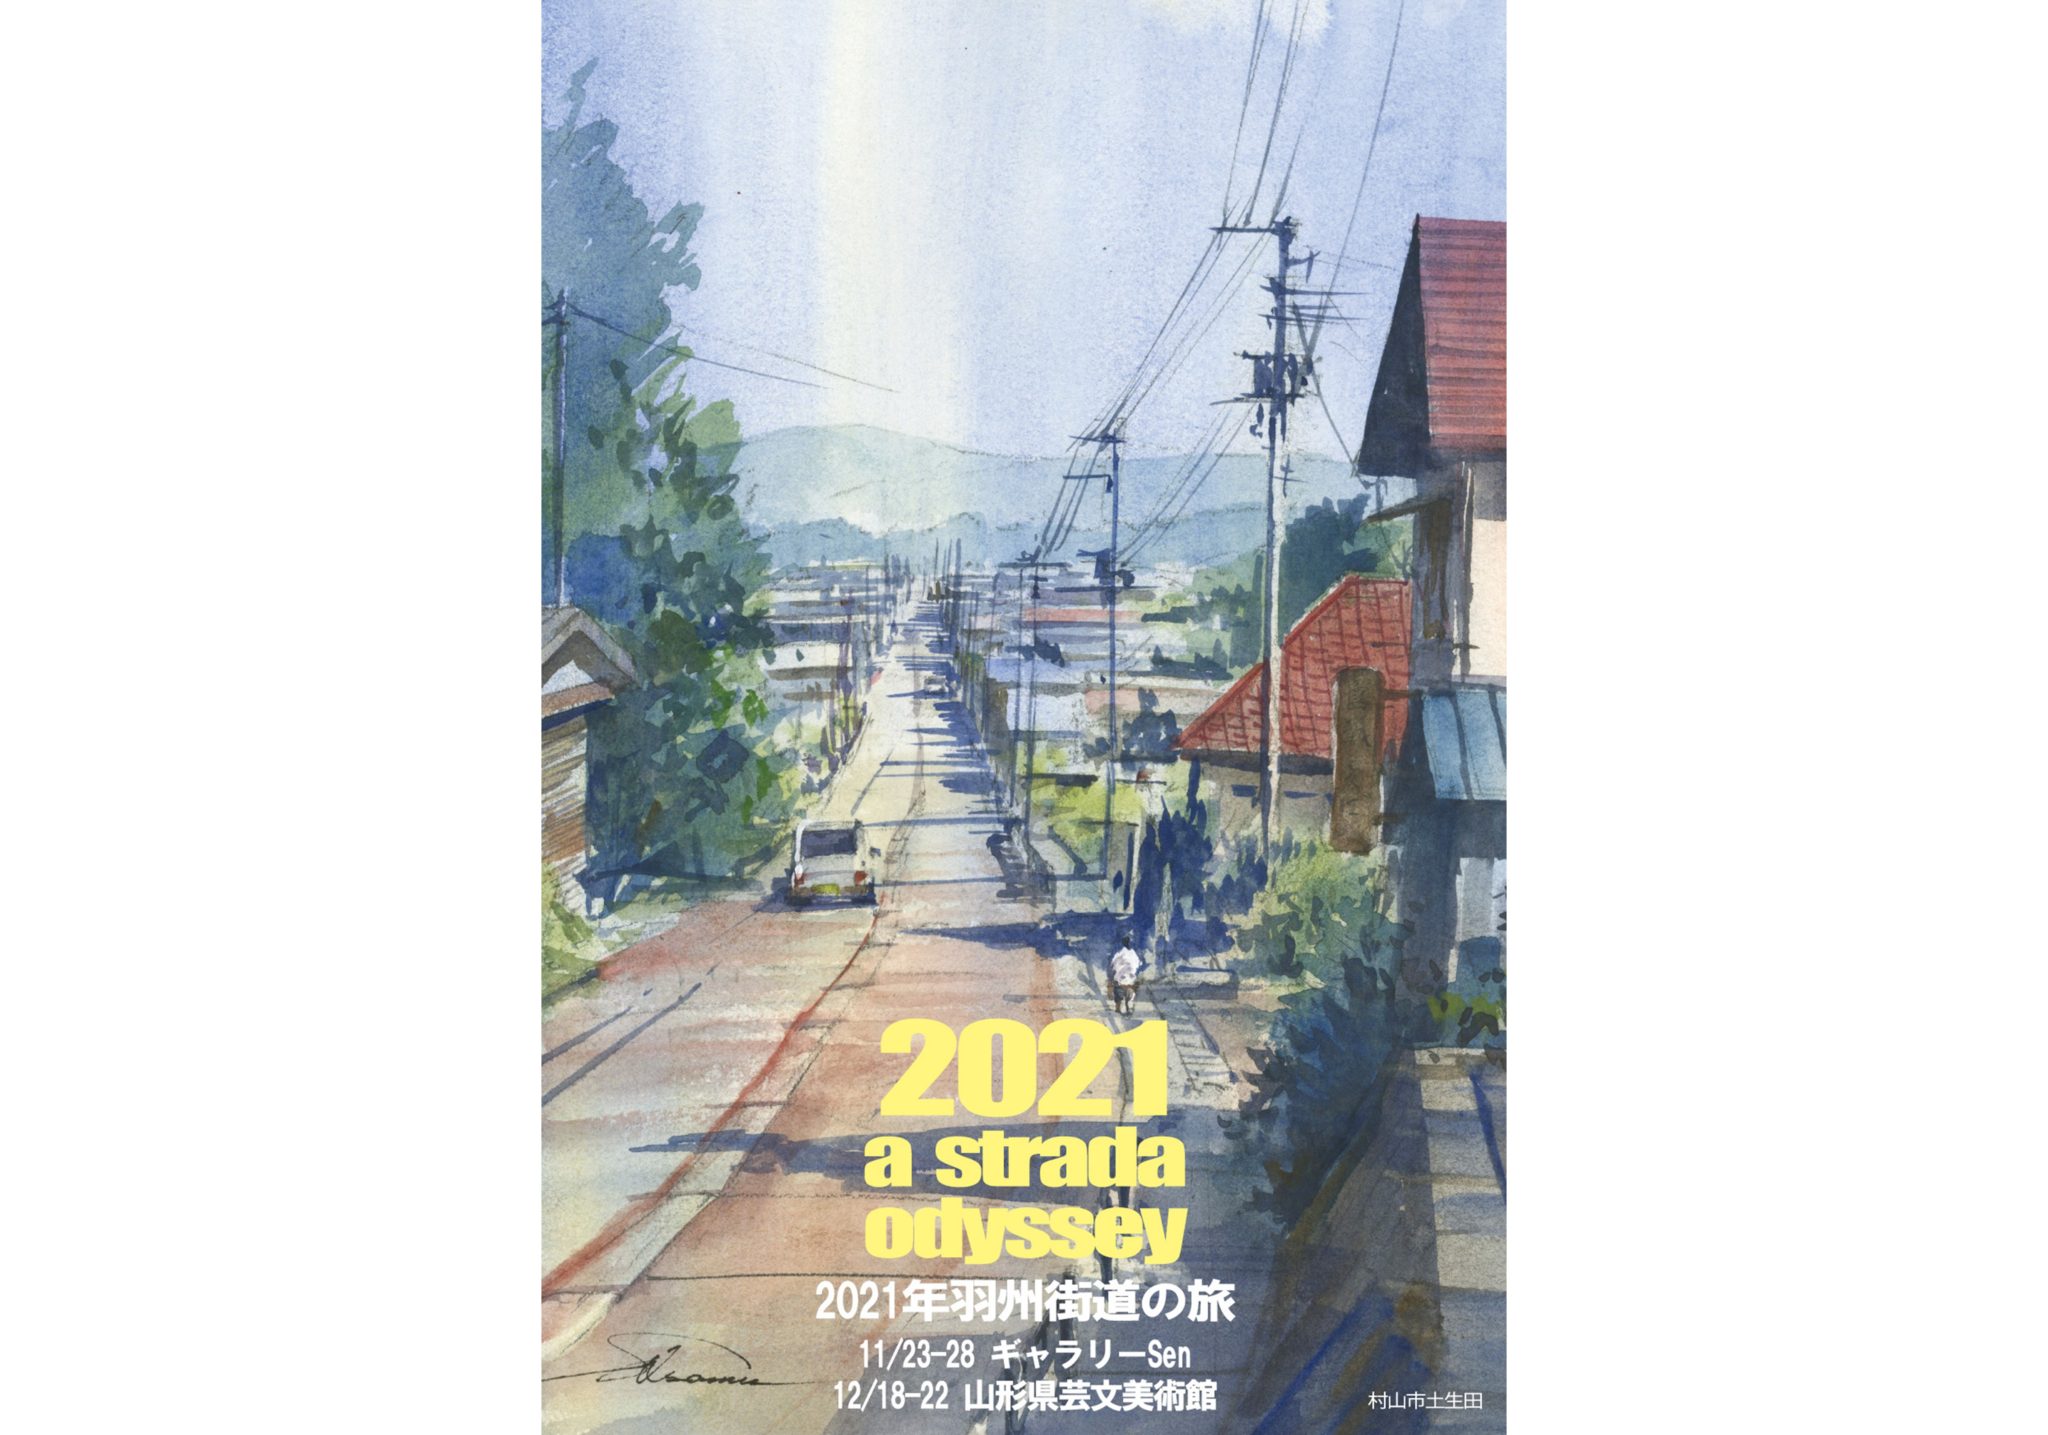 2021年羽州街道の旅｜柴田治 水彩画展